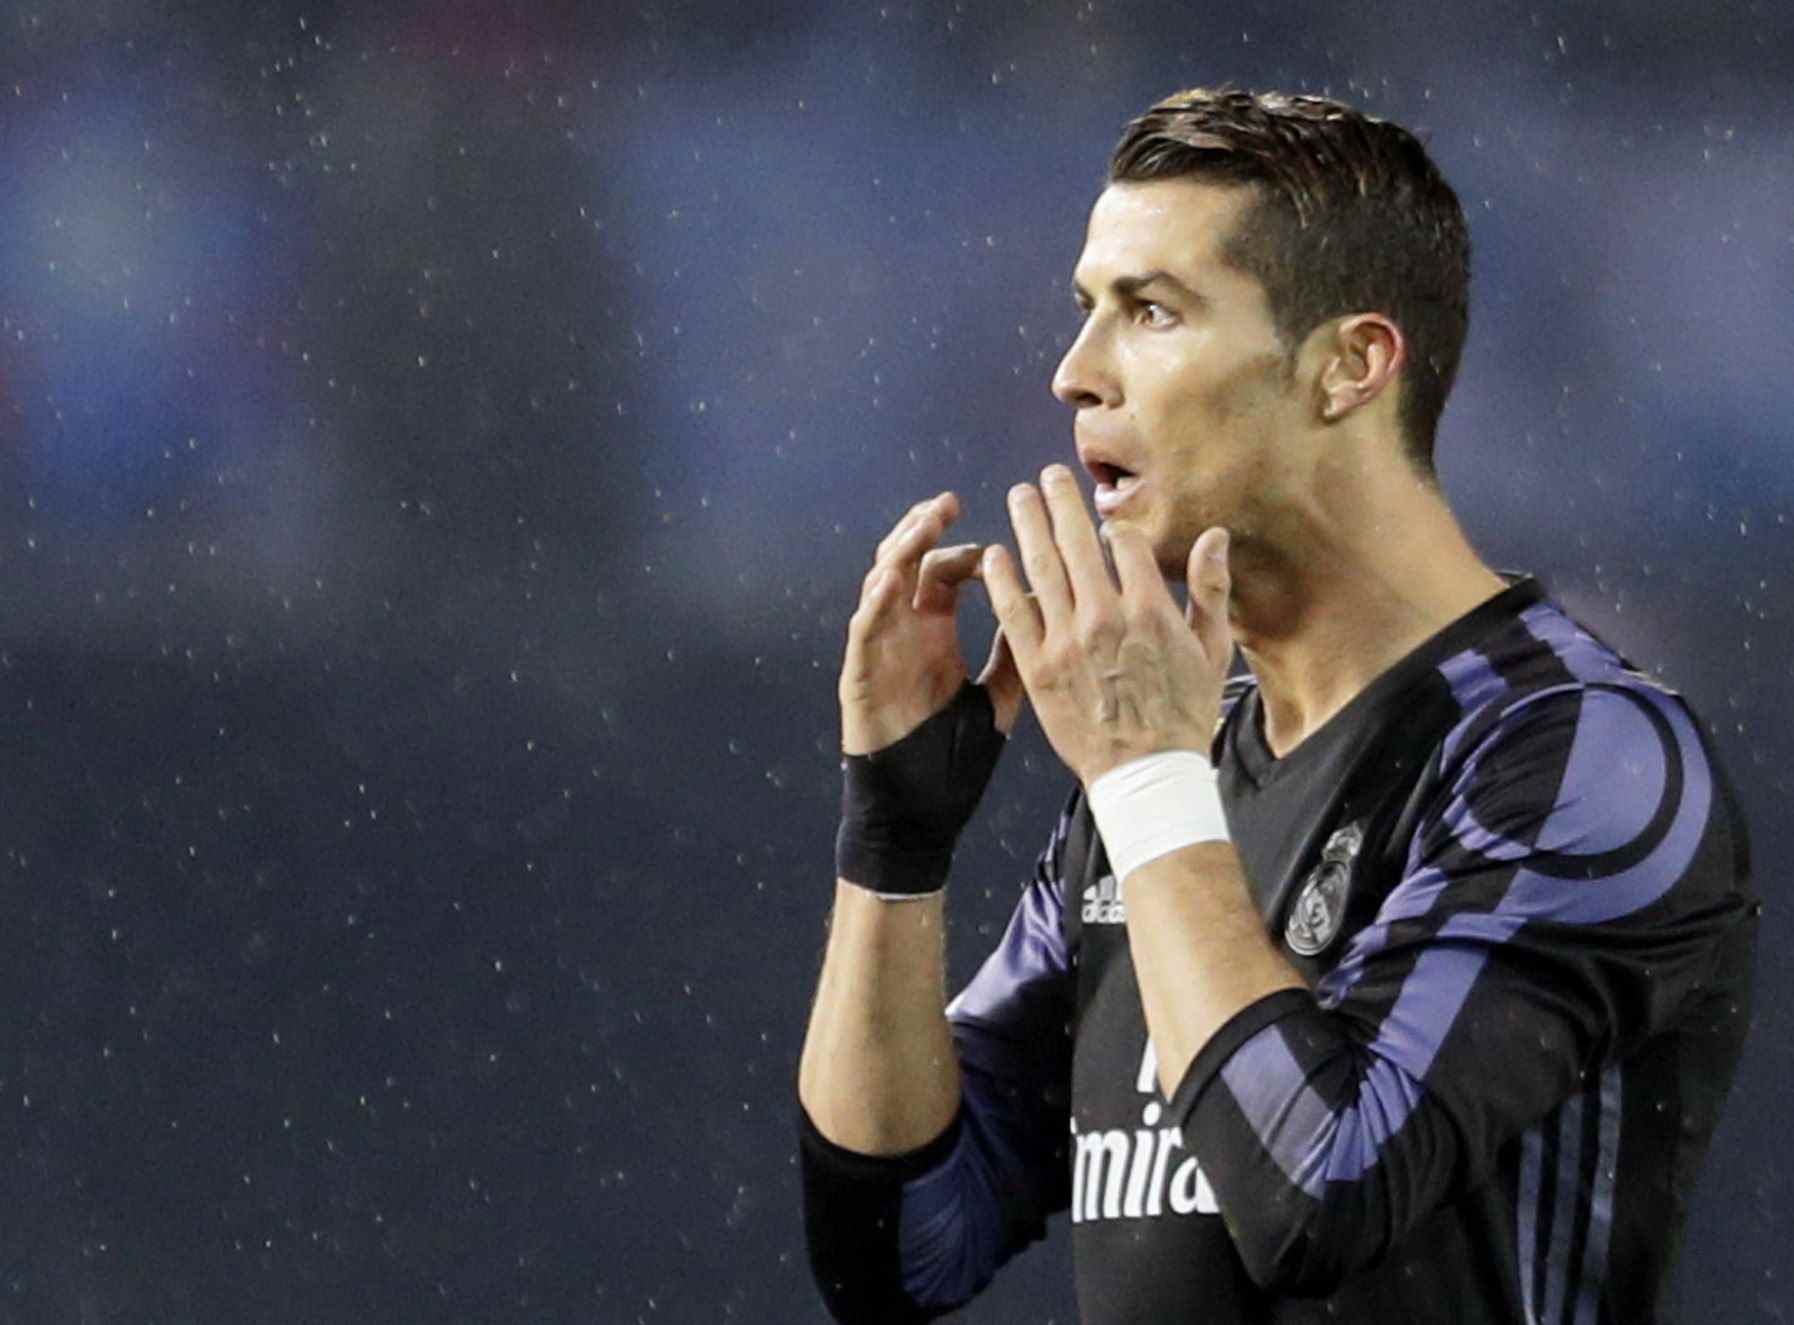 Campanya a Twitter exigint respostes sobre el 'cas Ronaldo'